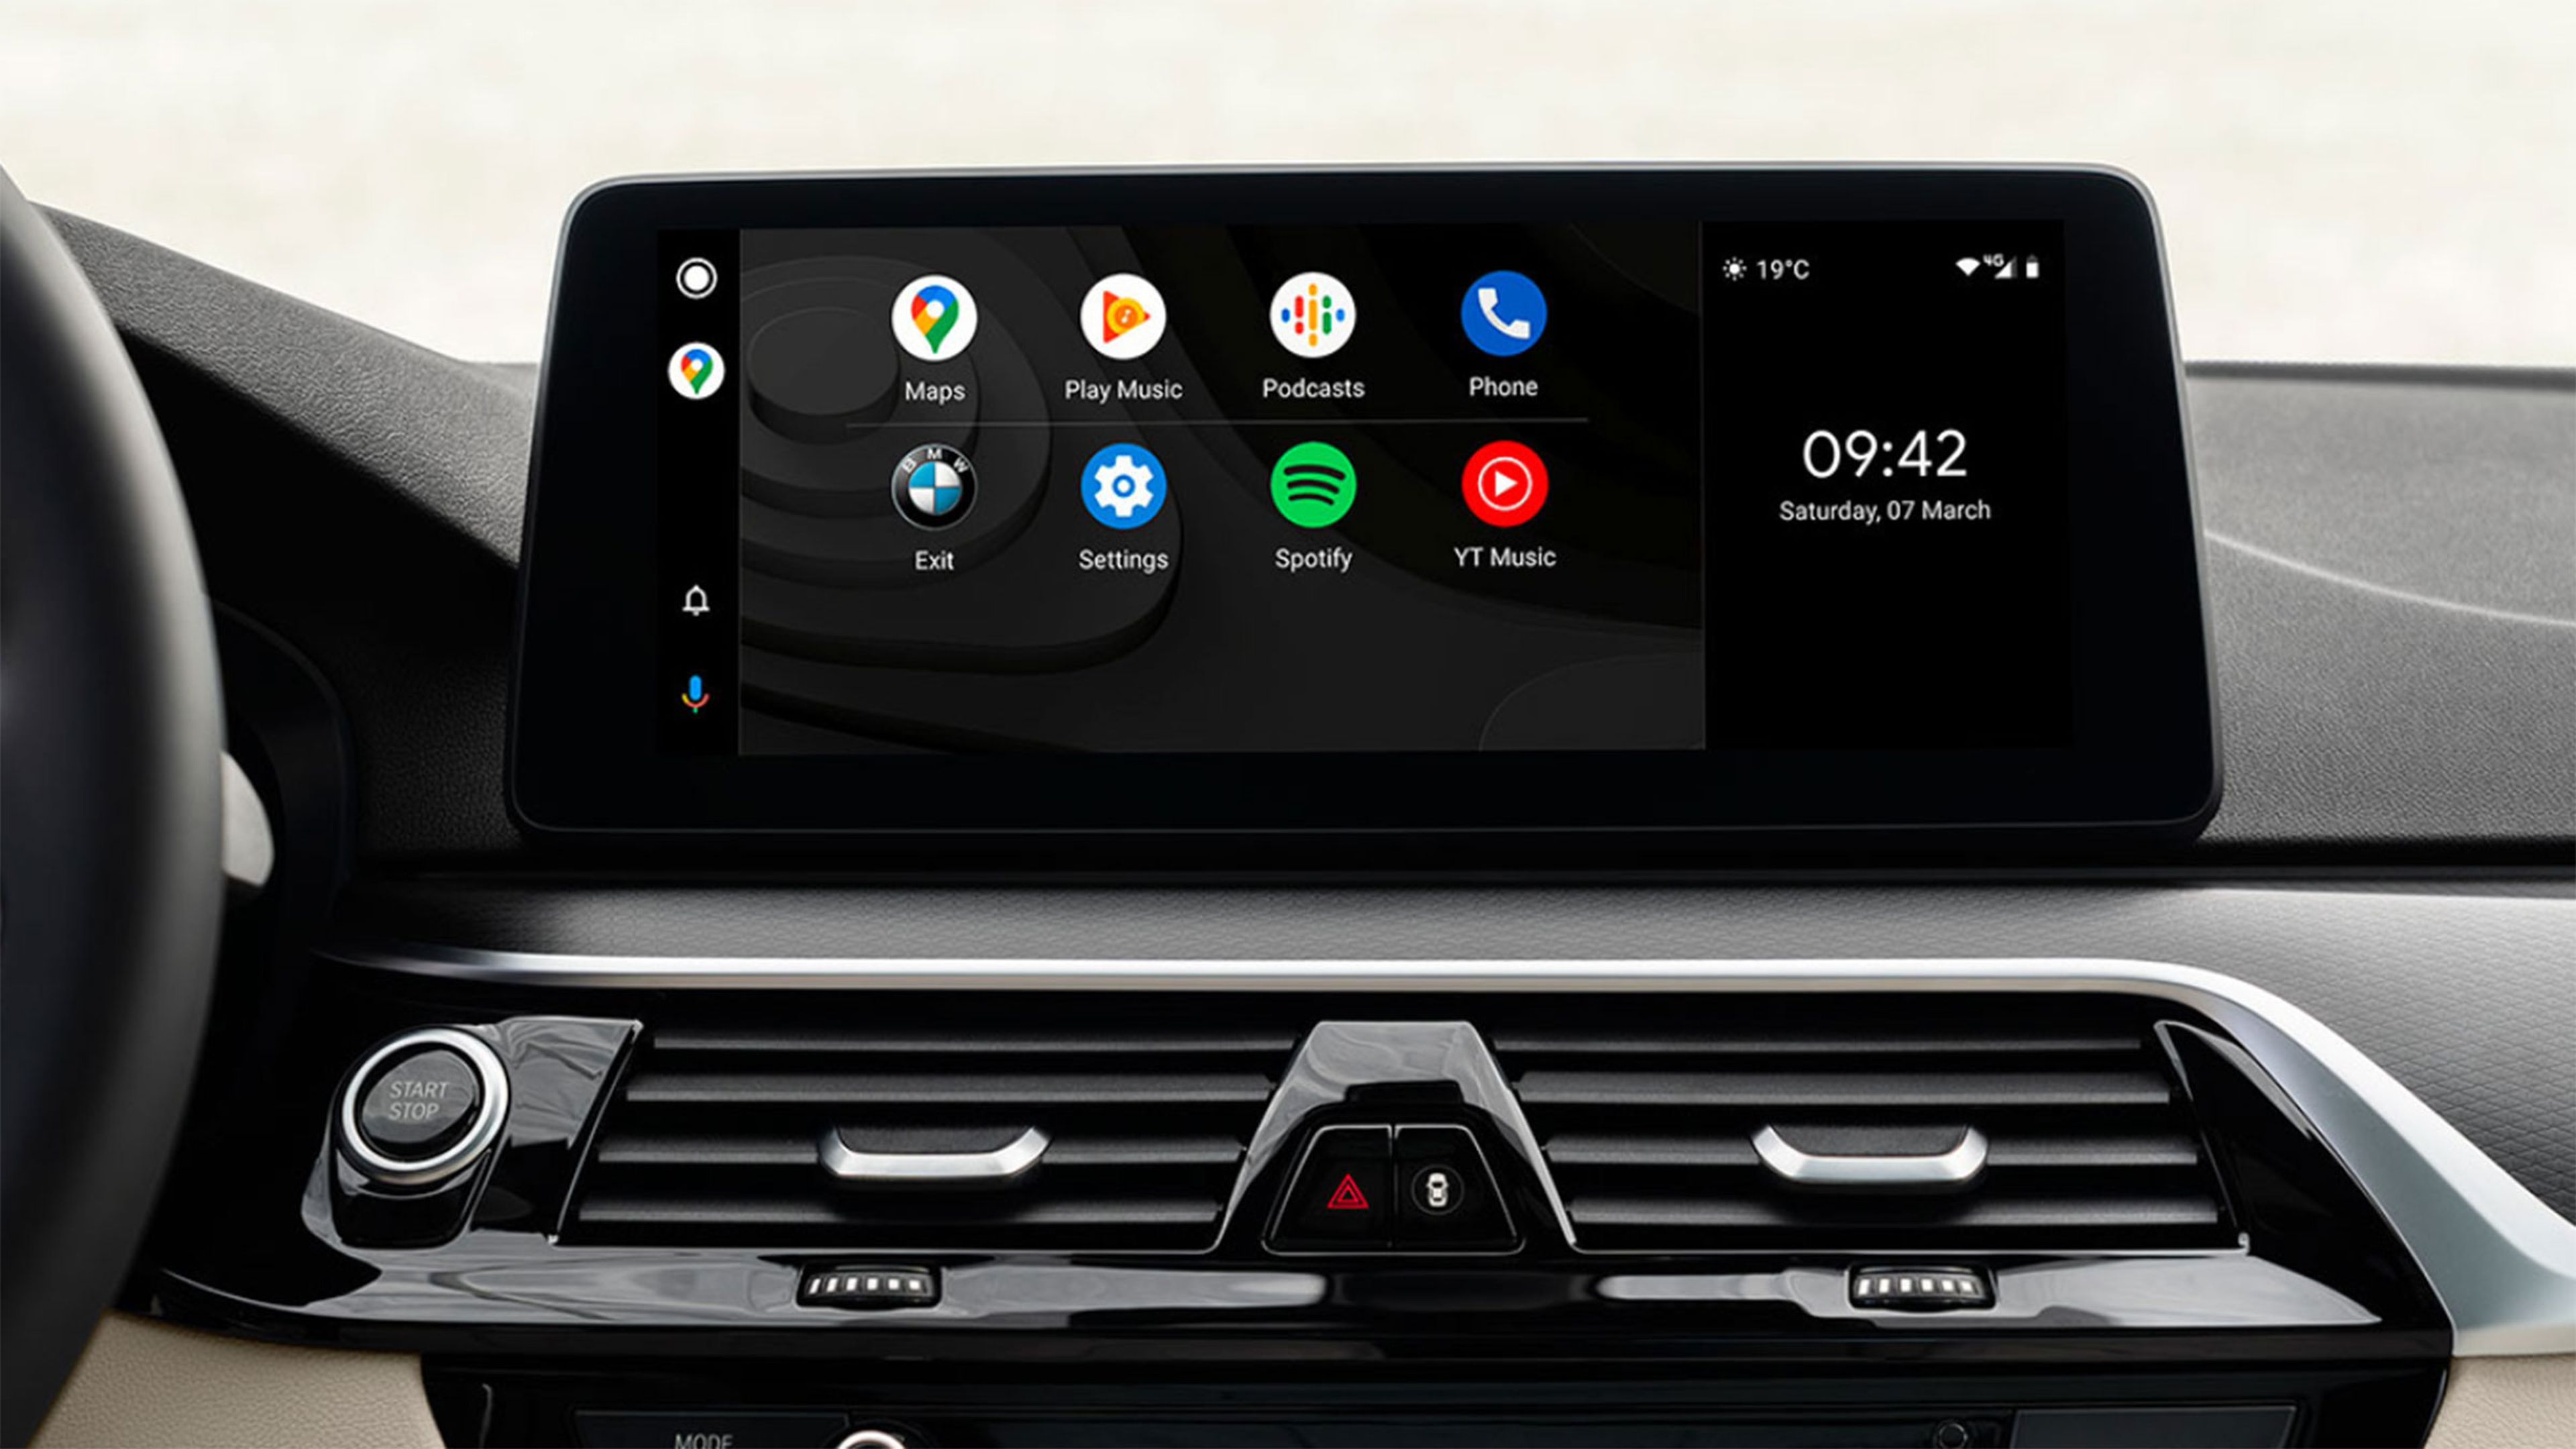 Si tu coche no tiene Android Auto, esta radio puede ser una